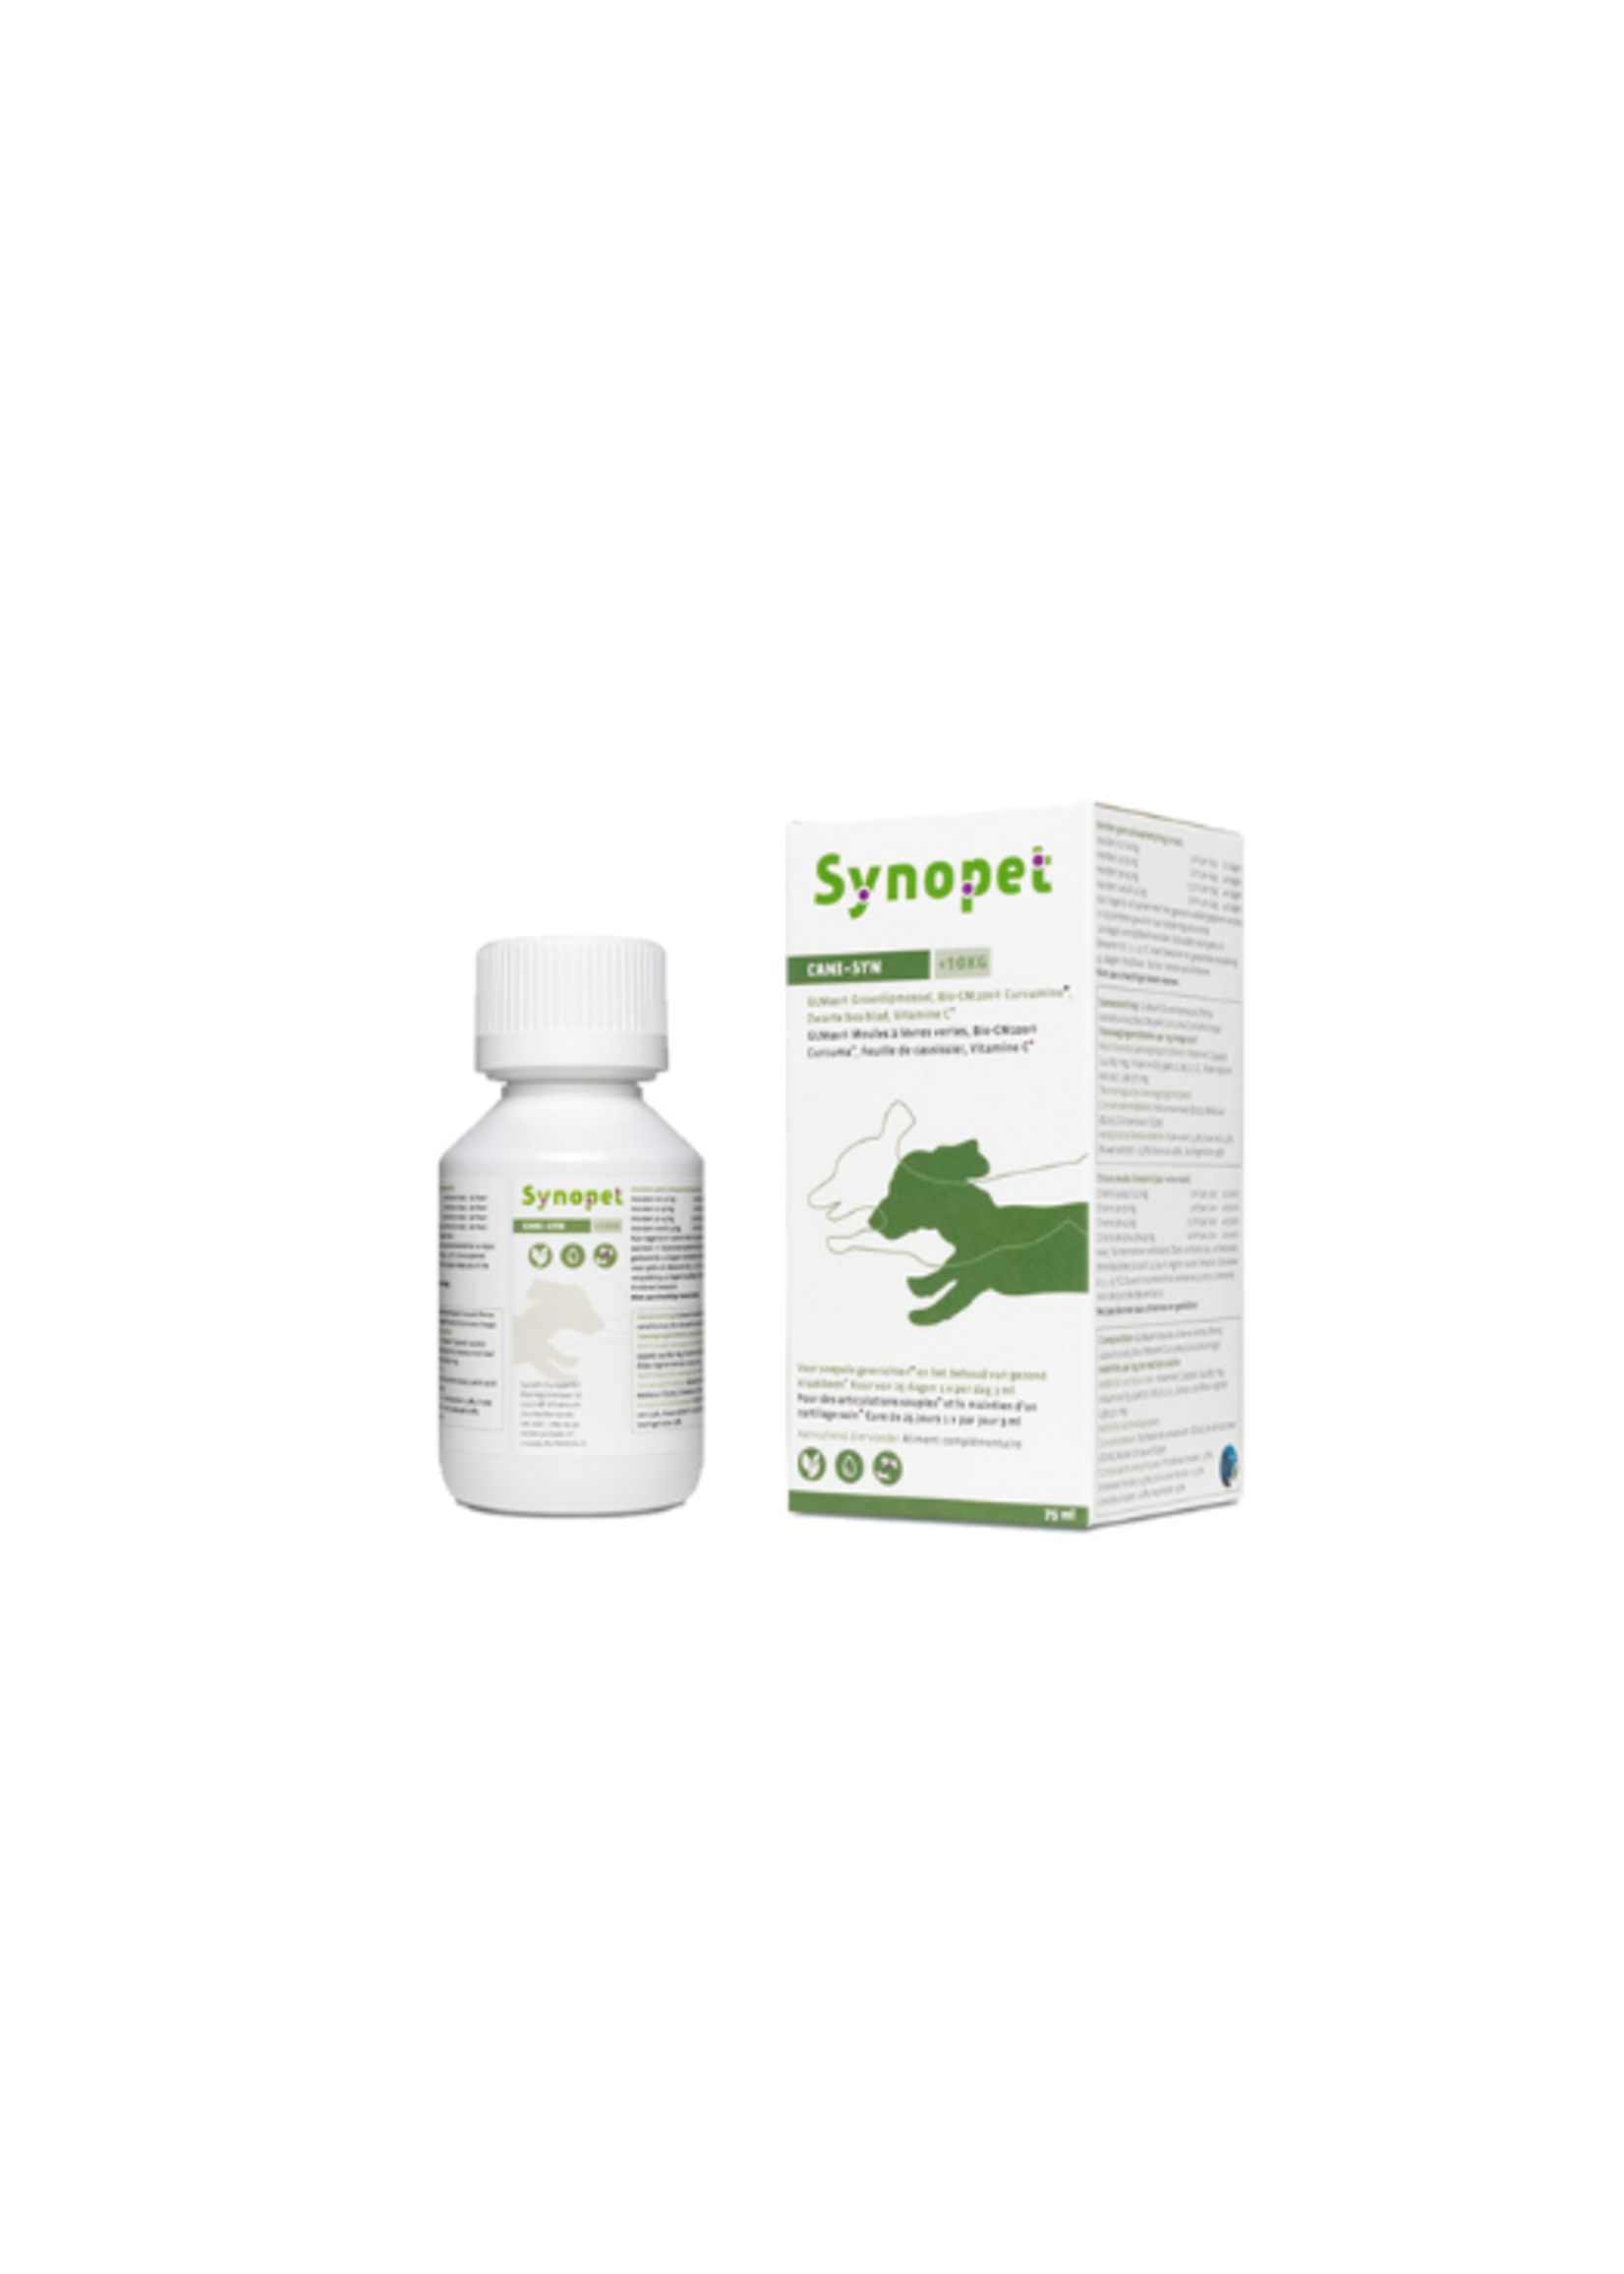 Synopet Synopet Cani-Syn | Ergänzungsfuttermittel für kleine Hunde bis 10 kg